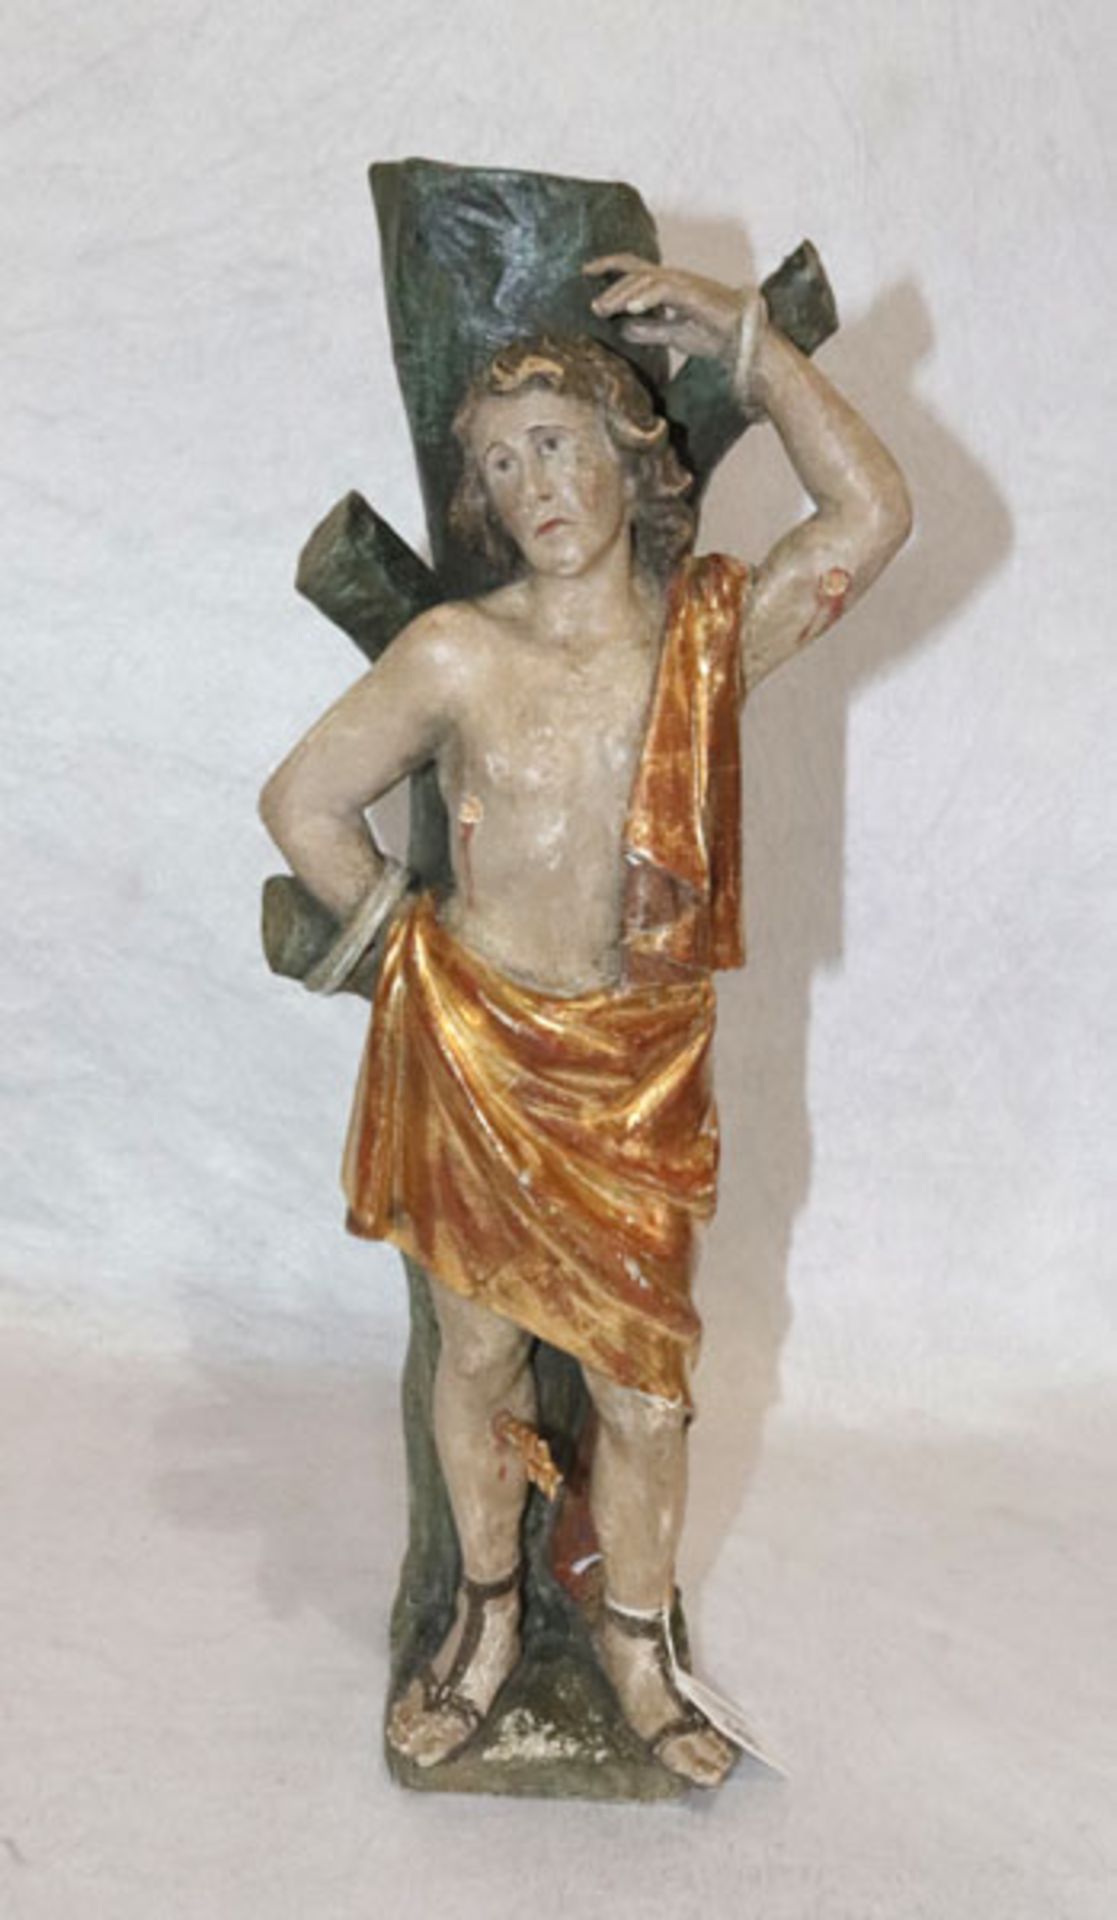 Holz Figurenskulptur 'Heiliger Sebastian', gefaßt, 2 Pfeile abgebrochen, Pfeile anbei, Fassung